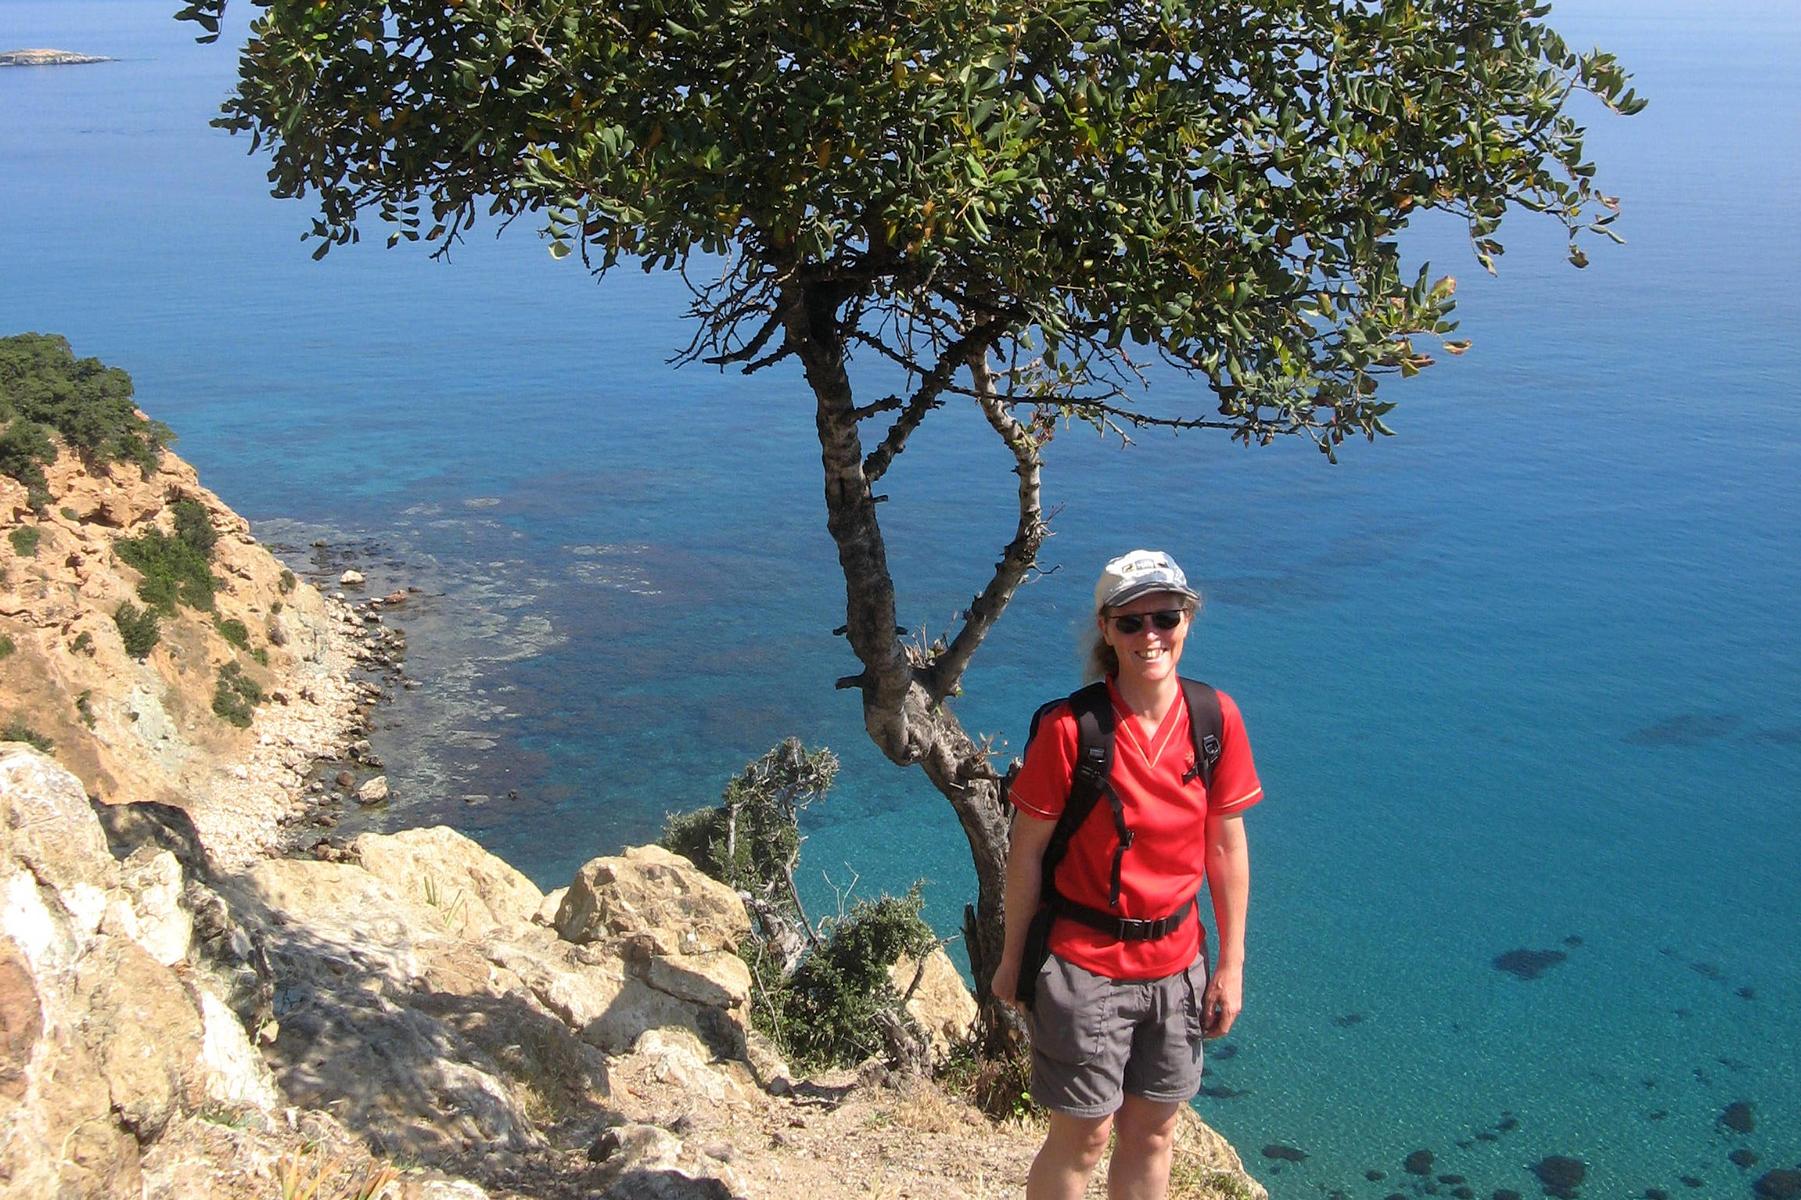 Wandertour an Zyperns Kste mit Blick auf das klare Meer - Lupe Reisen